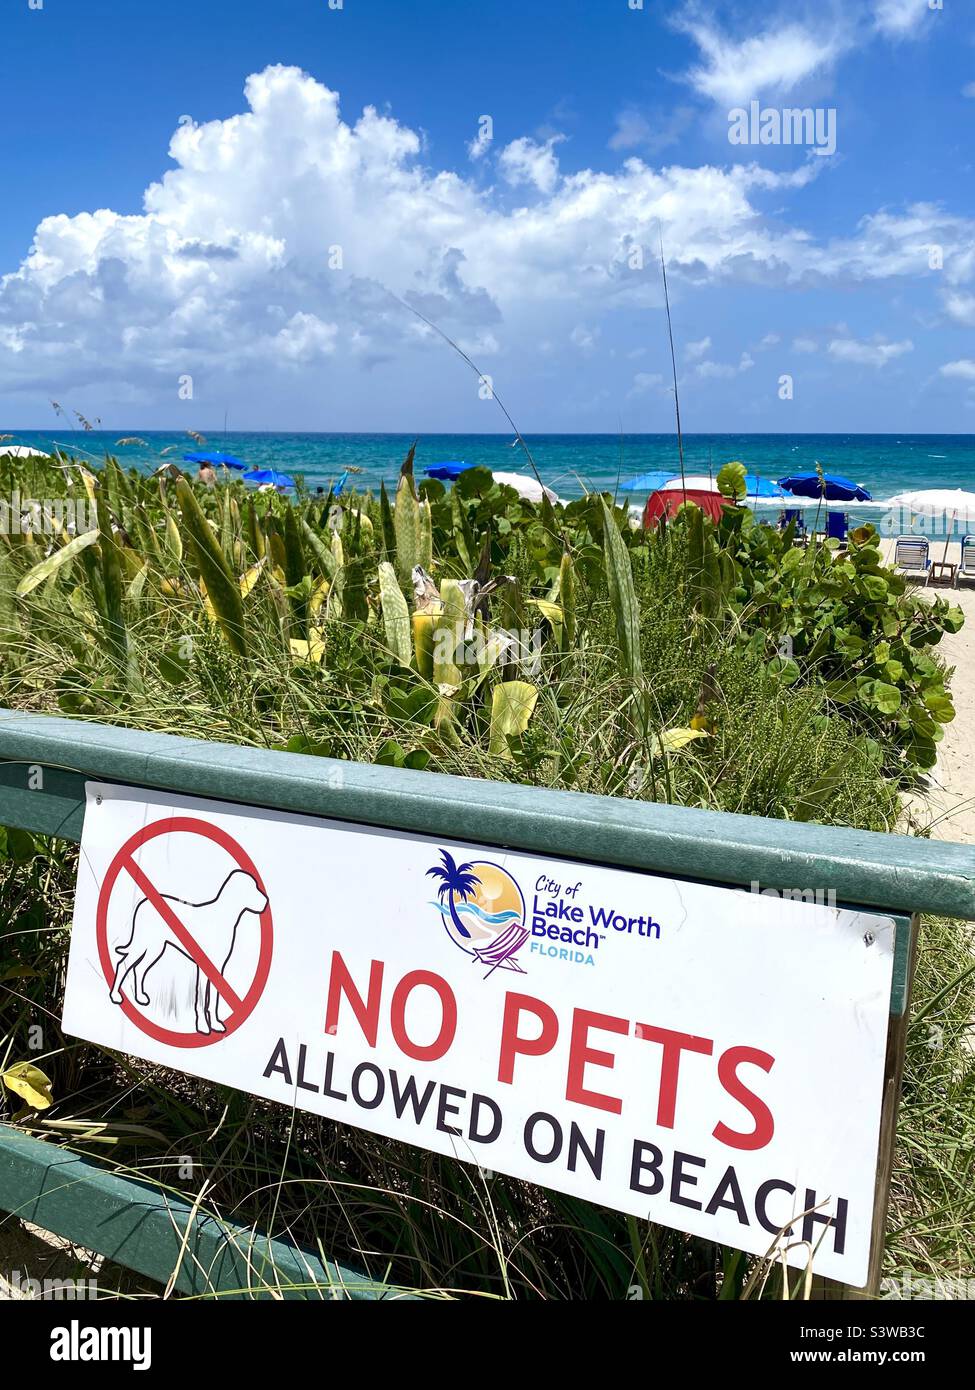 No pets allowed sign at Lake Worth Beach, Florida. Stock Photo